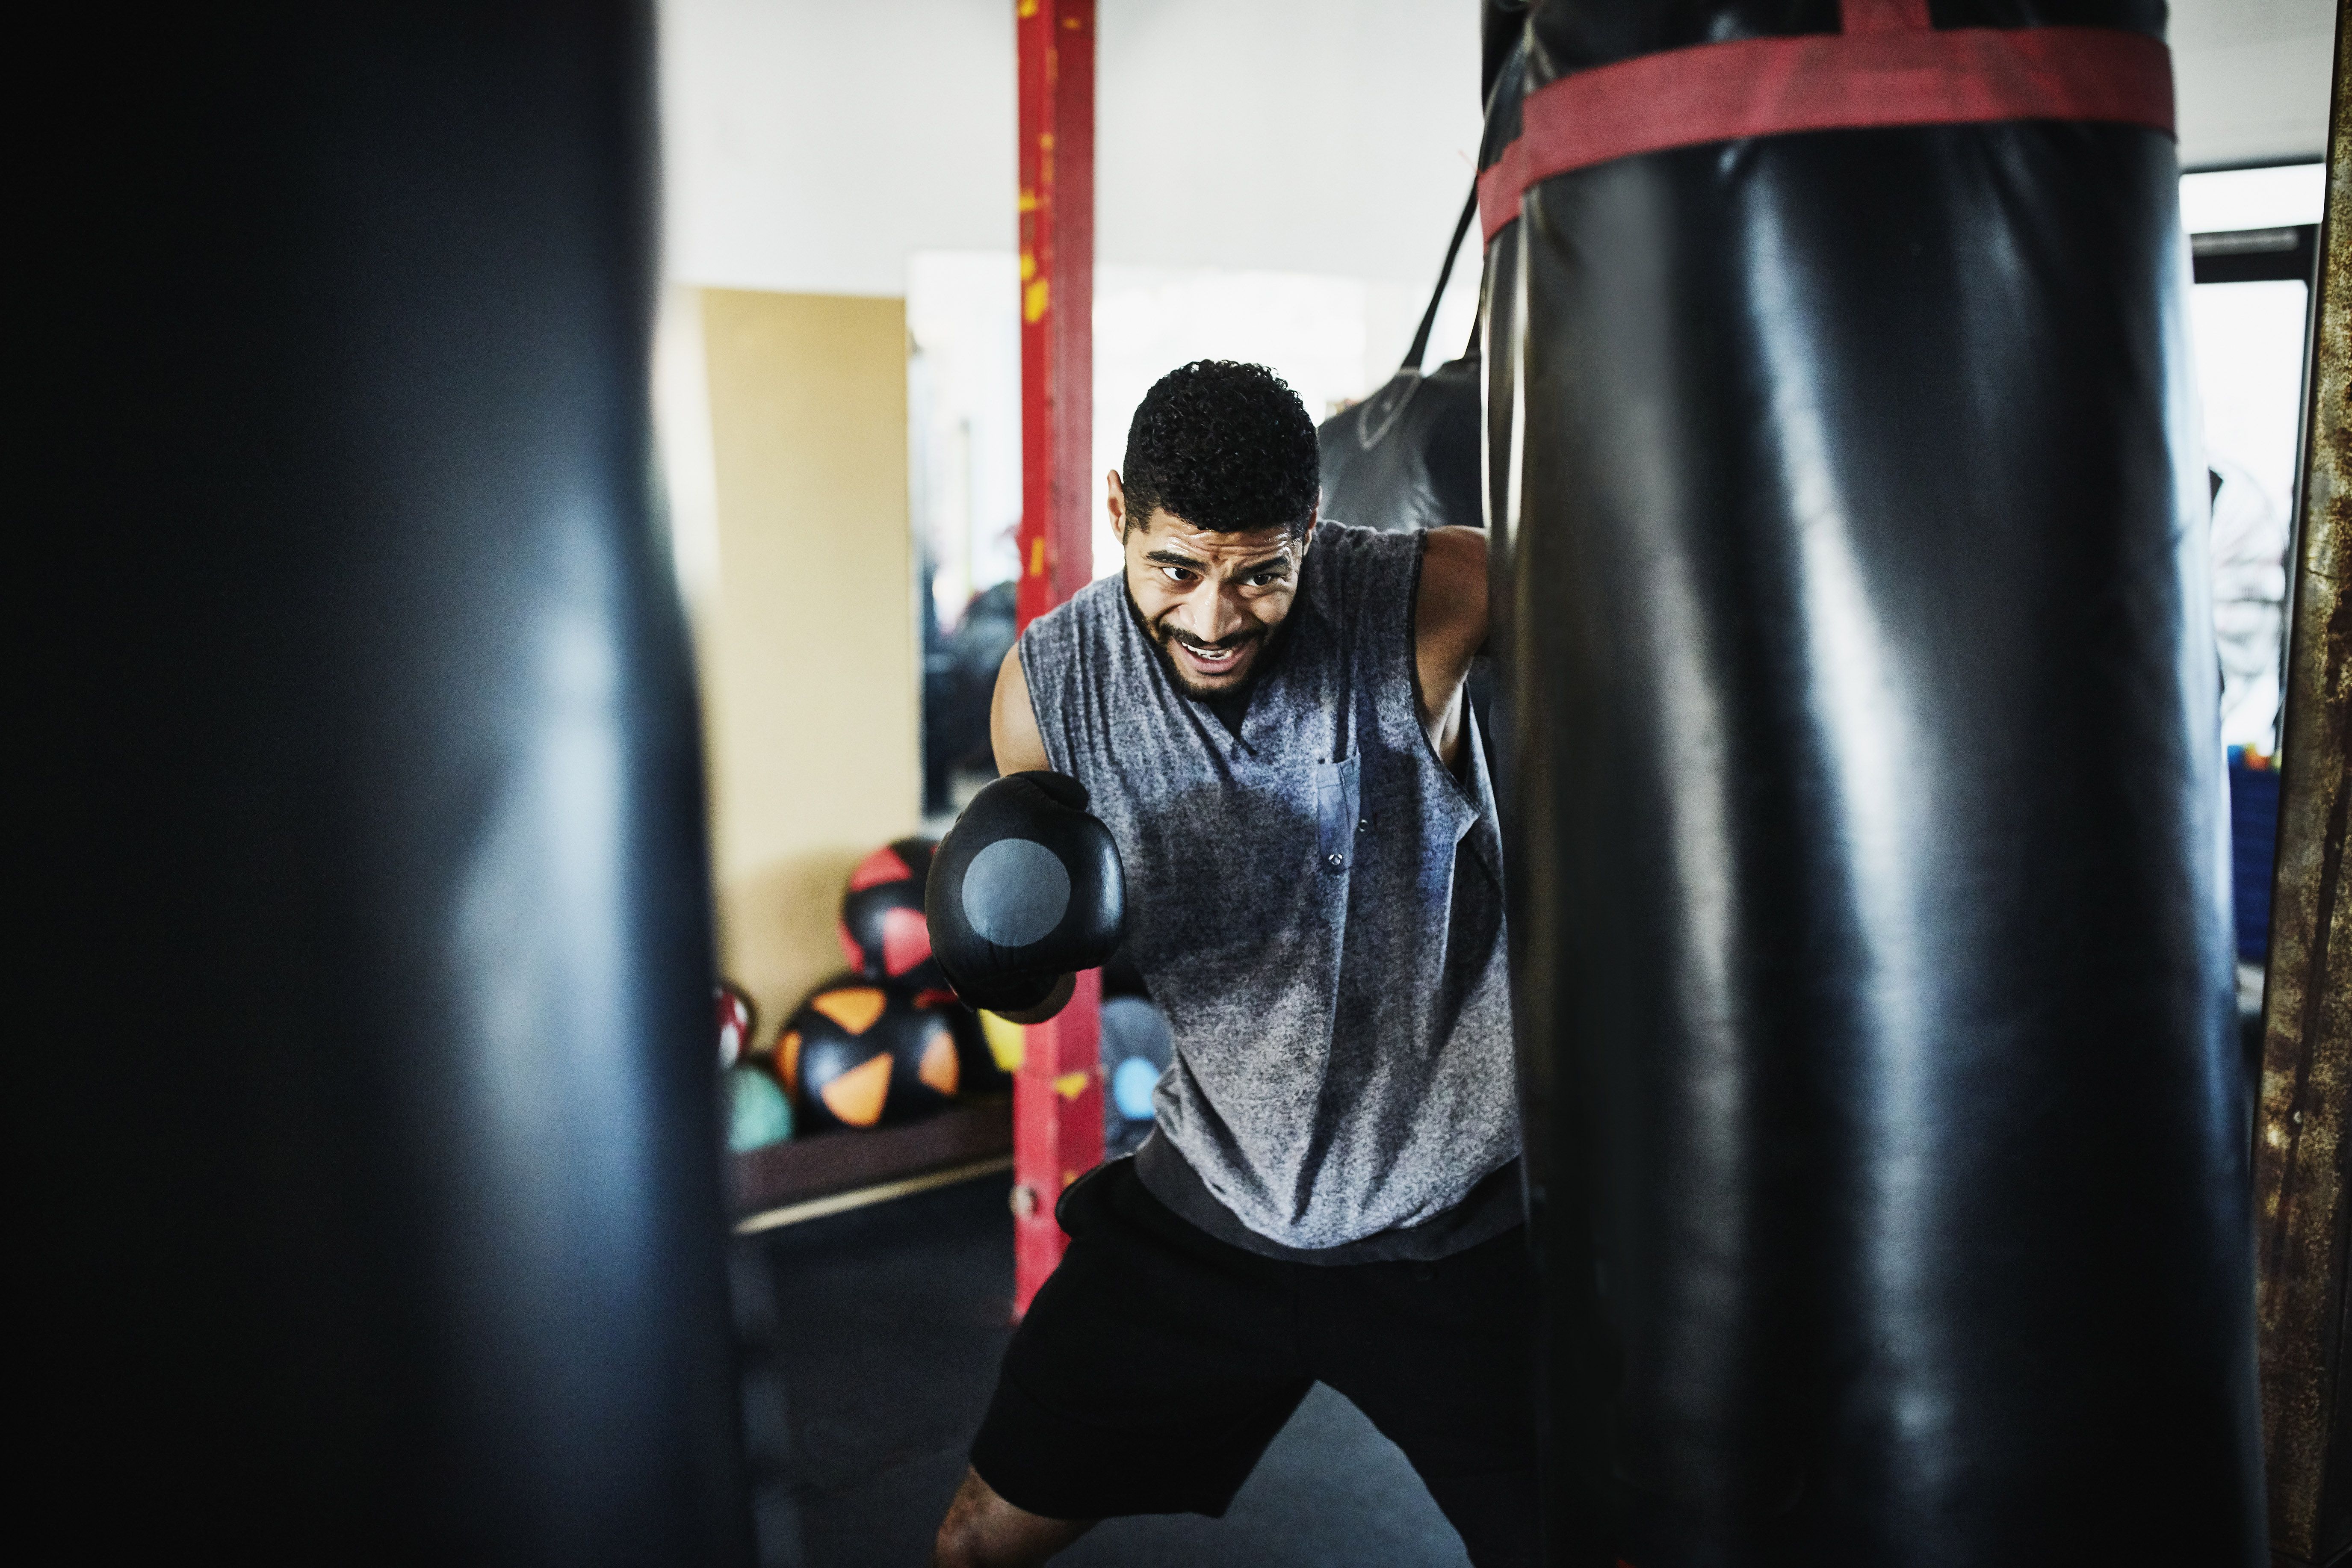 Punching bag Bandages Boxing Taekwondo Workout Fitness Hanging Durable 